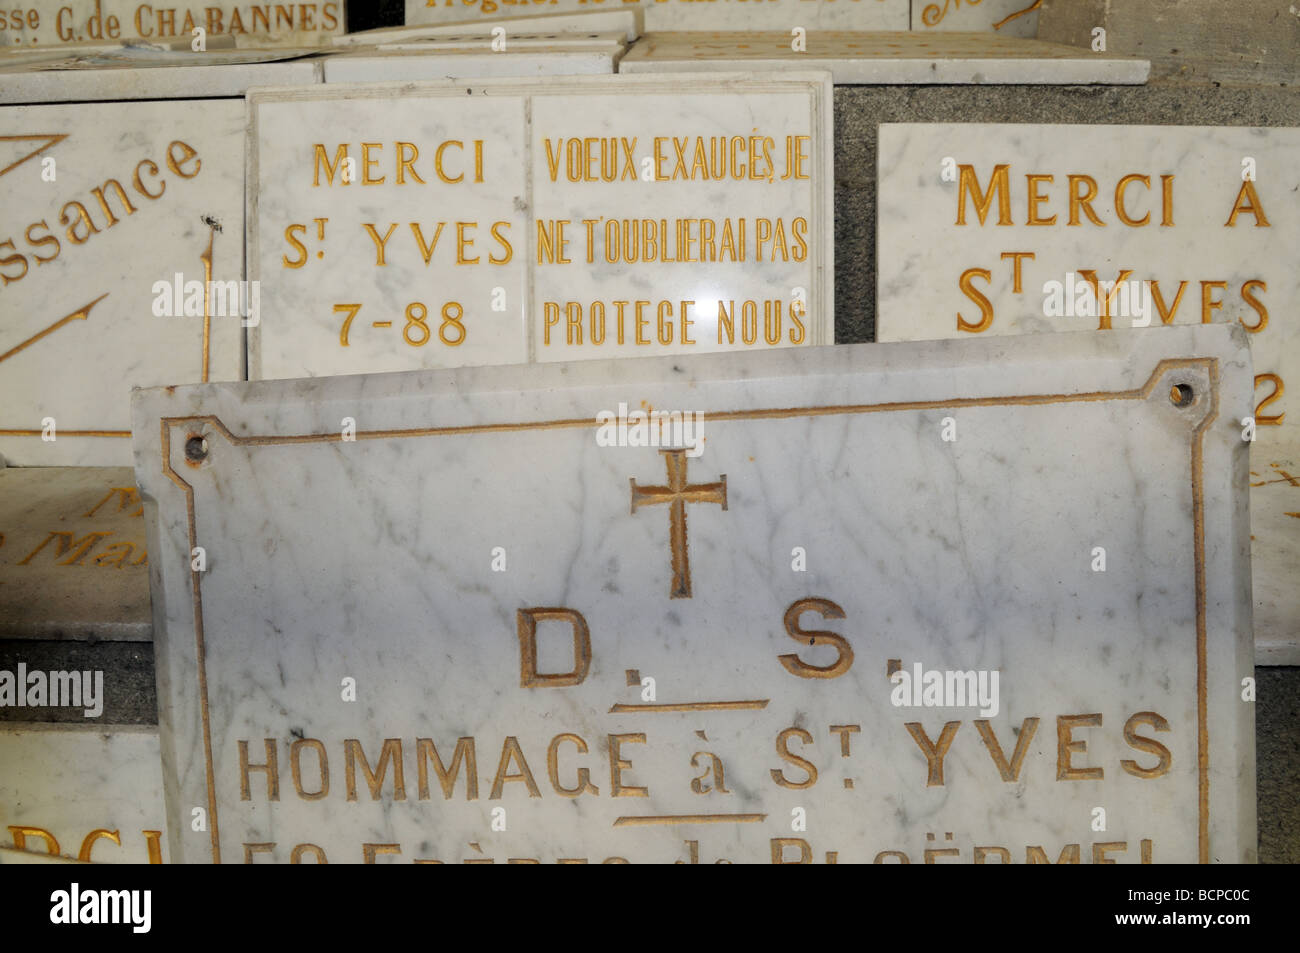 Le placche che offre grazie a Saint Yves nella cattedrale di Treguier Foto Stock